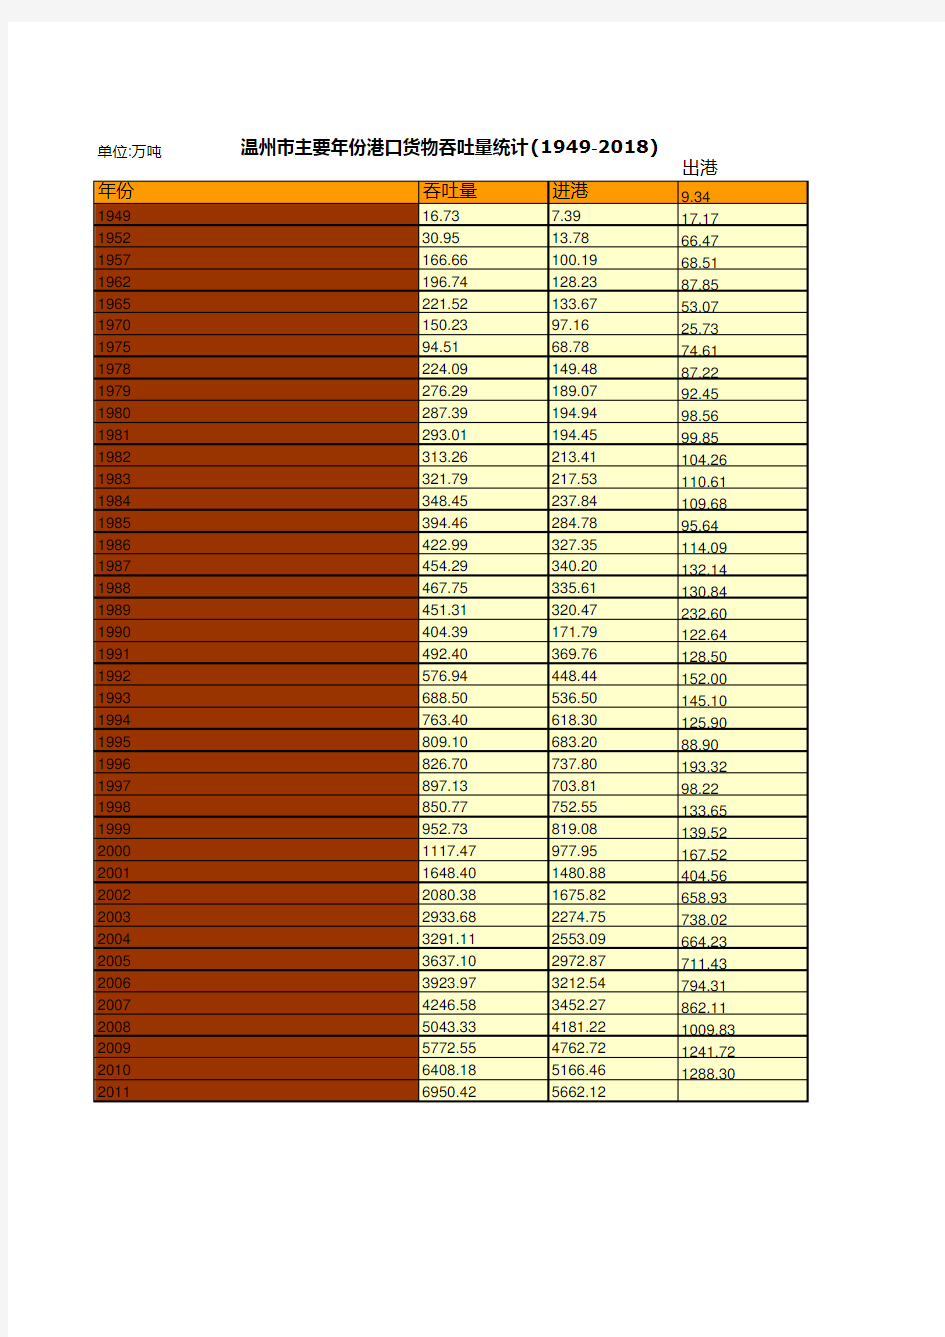 温州市社会经济发展统计年鉴指标数据：主要年份港口货物吞吐量统计(1949-2018)